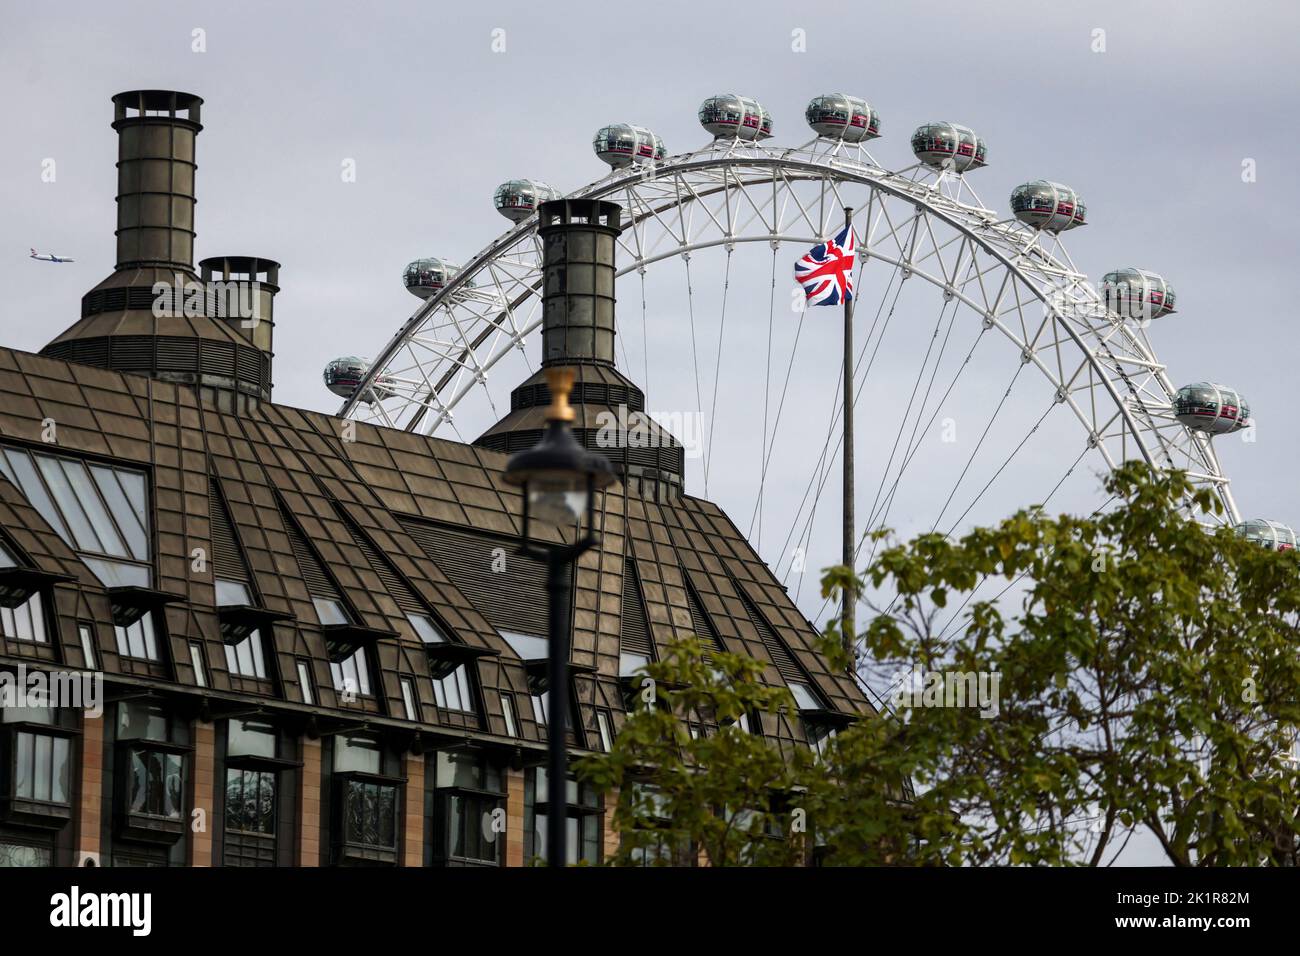 Nach dem Ende der offiziellen Trauerperiode der britischen Königin Elizabeth in London, Großbritannien, am 20. September 2022, flattert eine Union Jack-Fahne auf Hochmast. REUTERS/Tom Nicholson Stockfoto